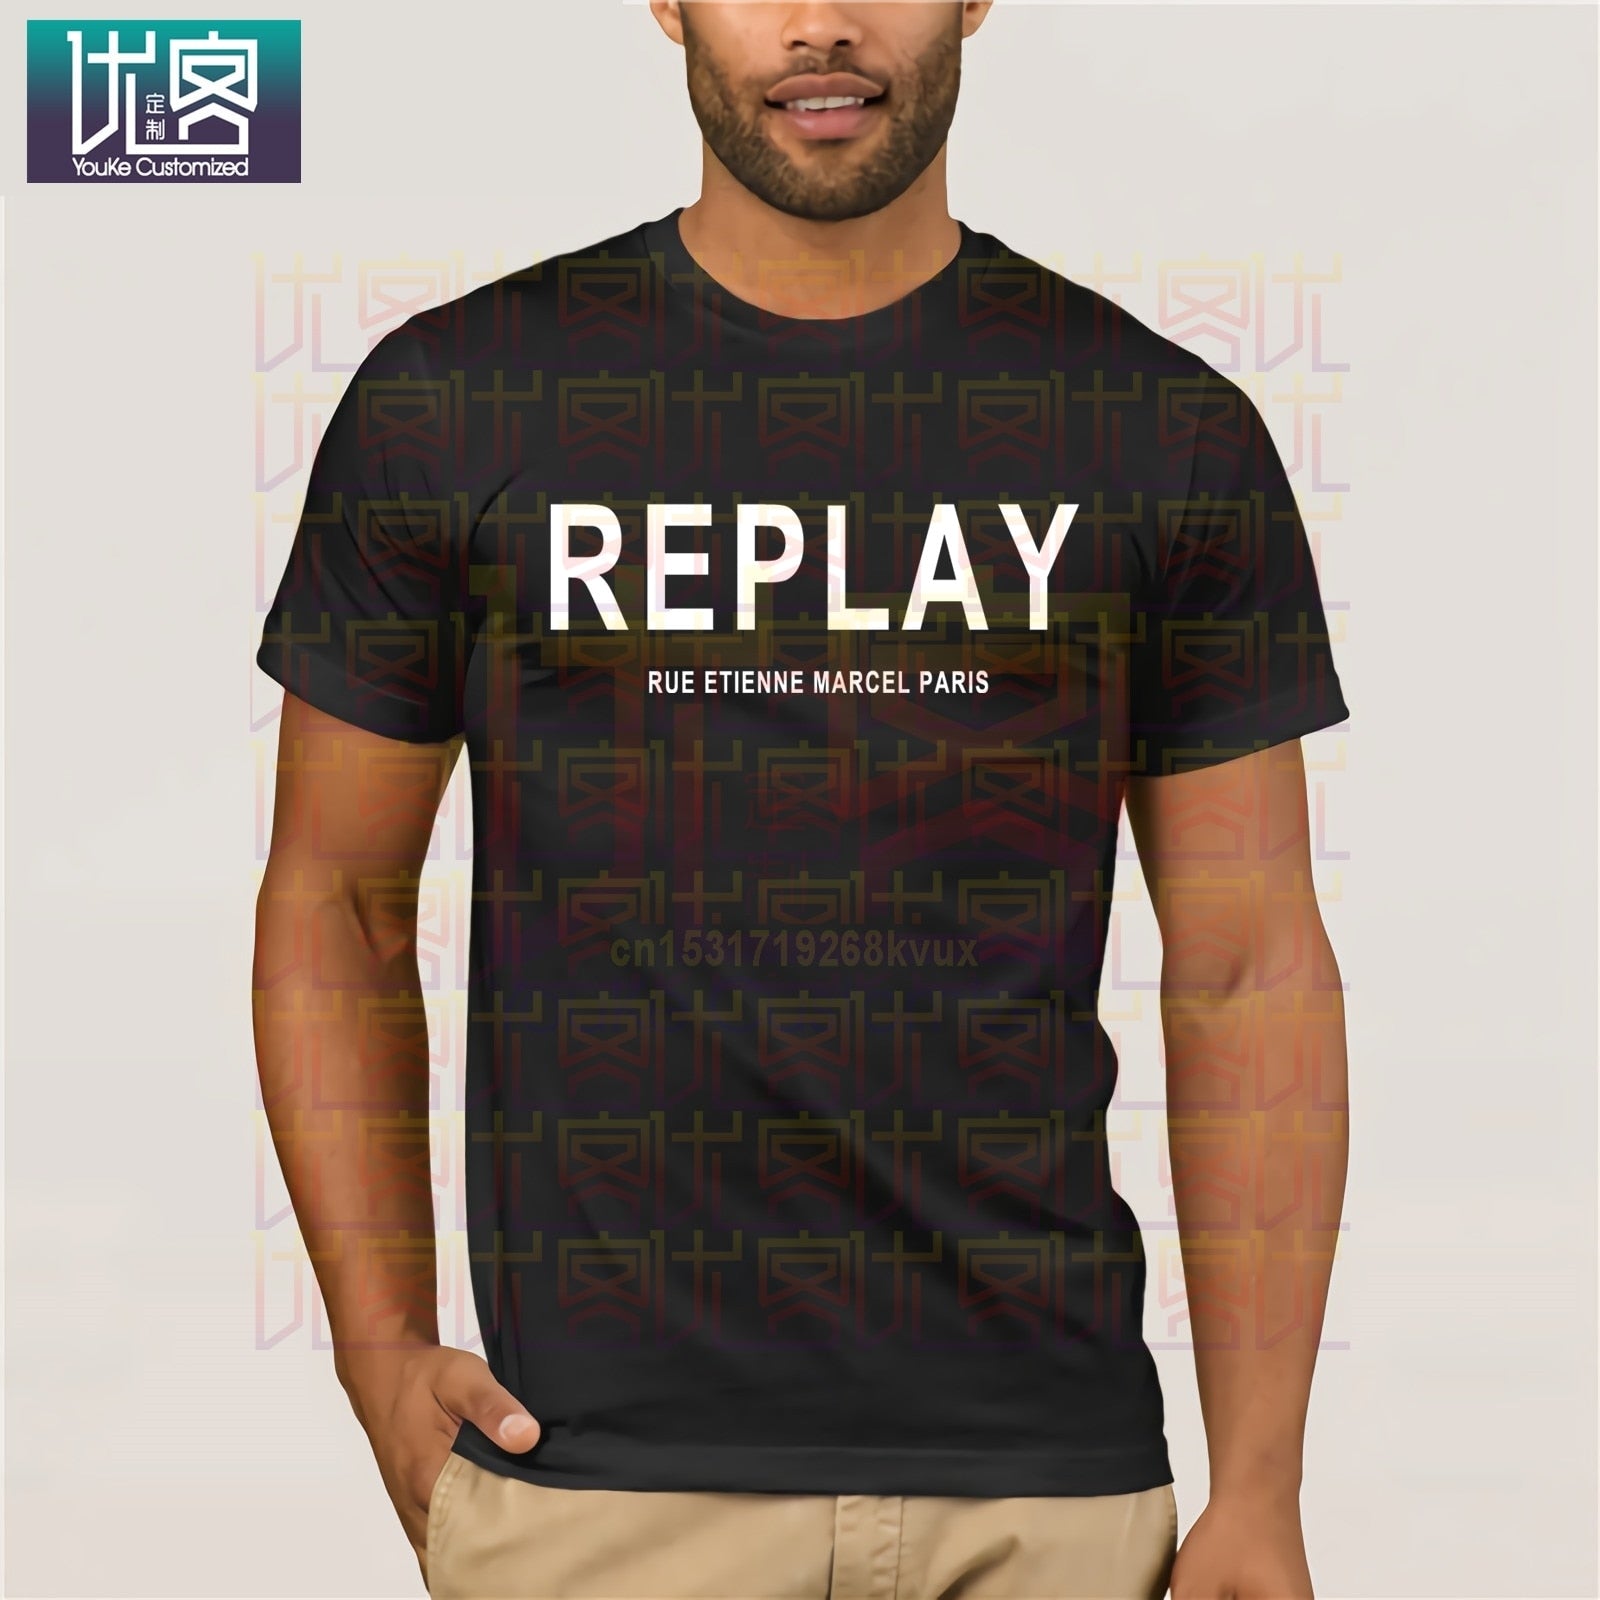 Replay T shirts  Shirts, Print clothes, T shirt